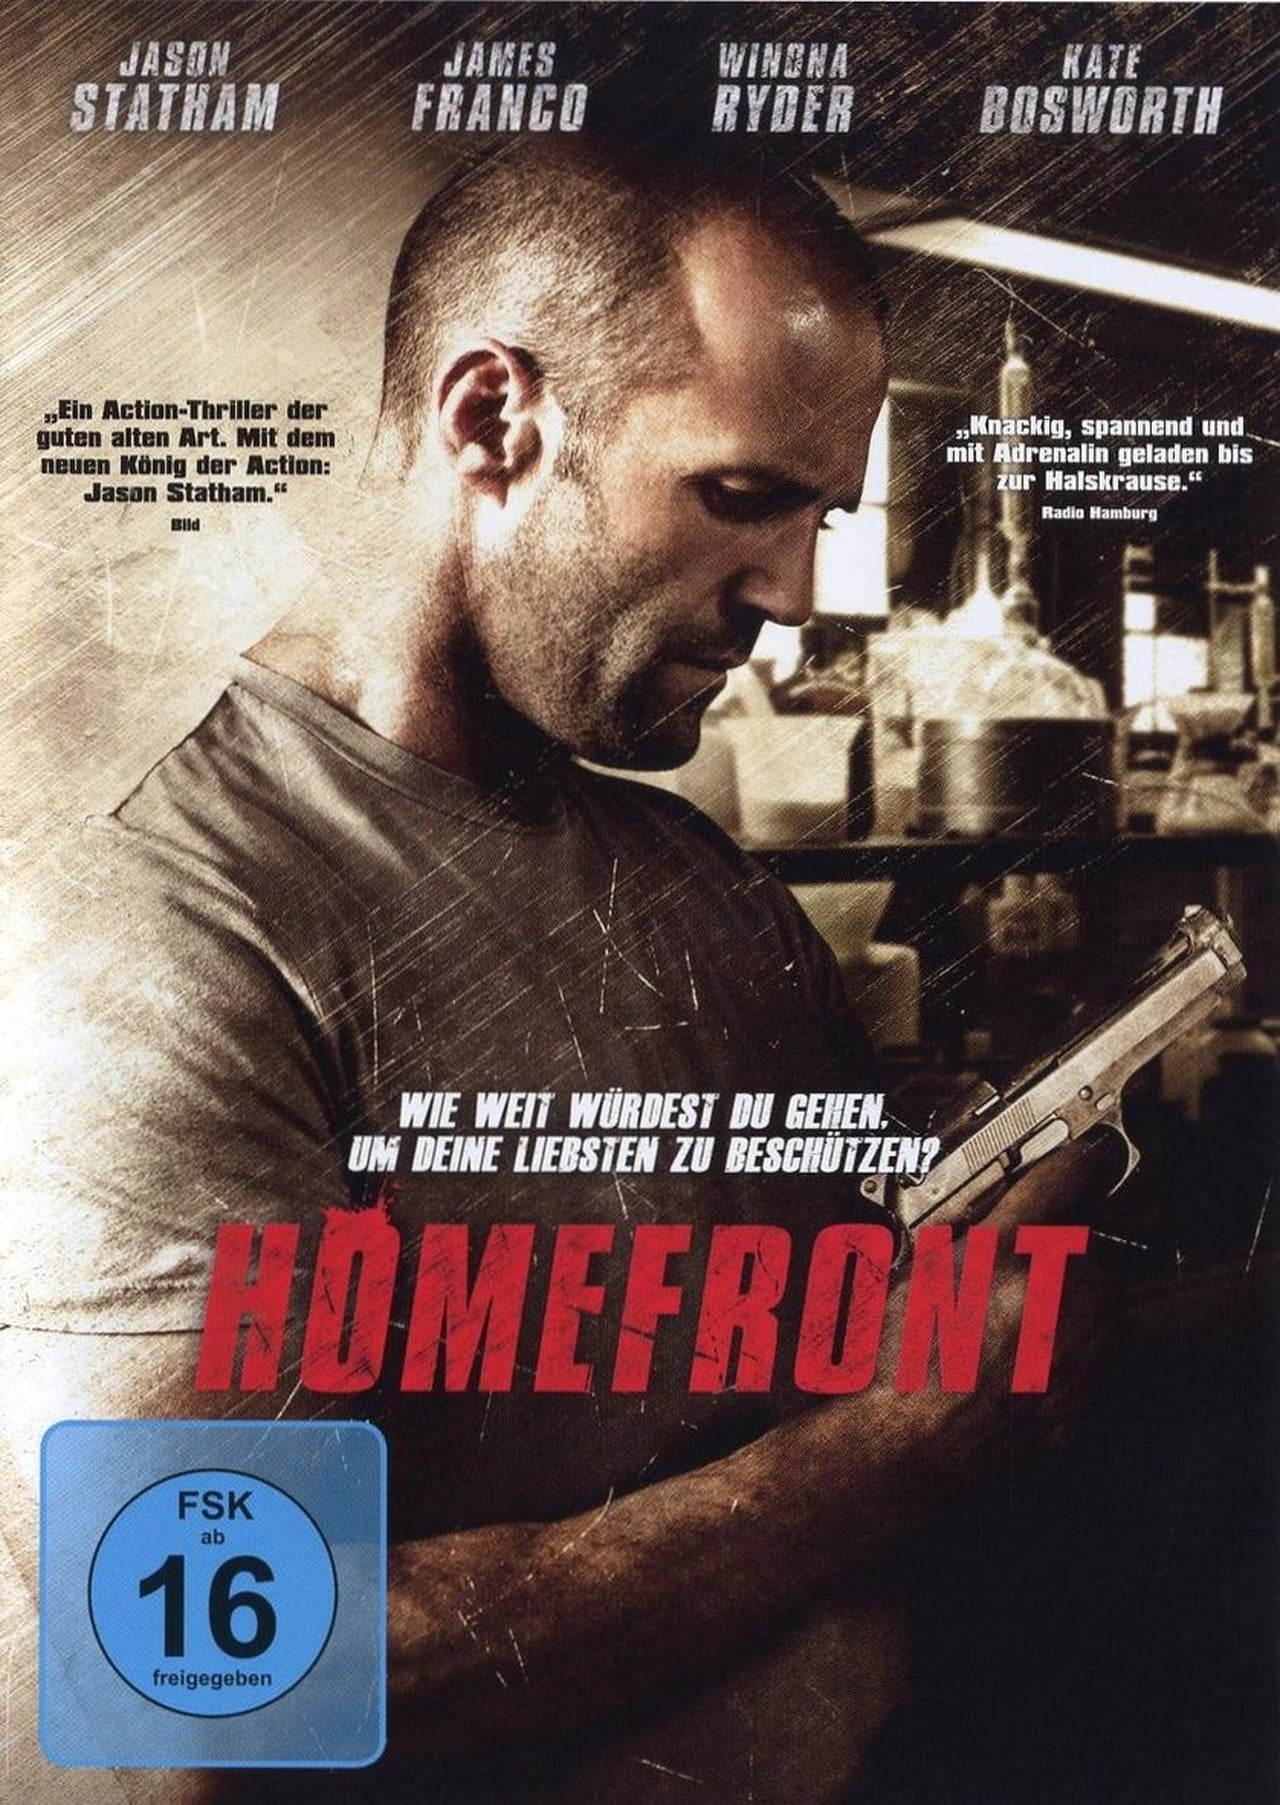 Homefront (2013) 192Kbps 23.976Fps 48Khz 2.0Ch DigitalTV Turkish Audio TAC